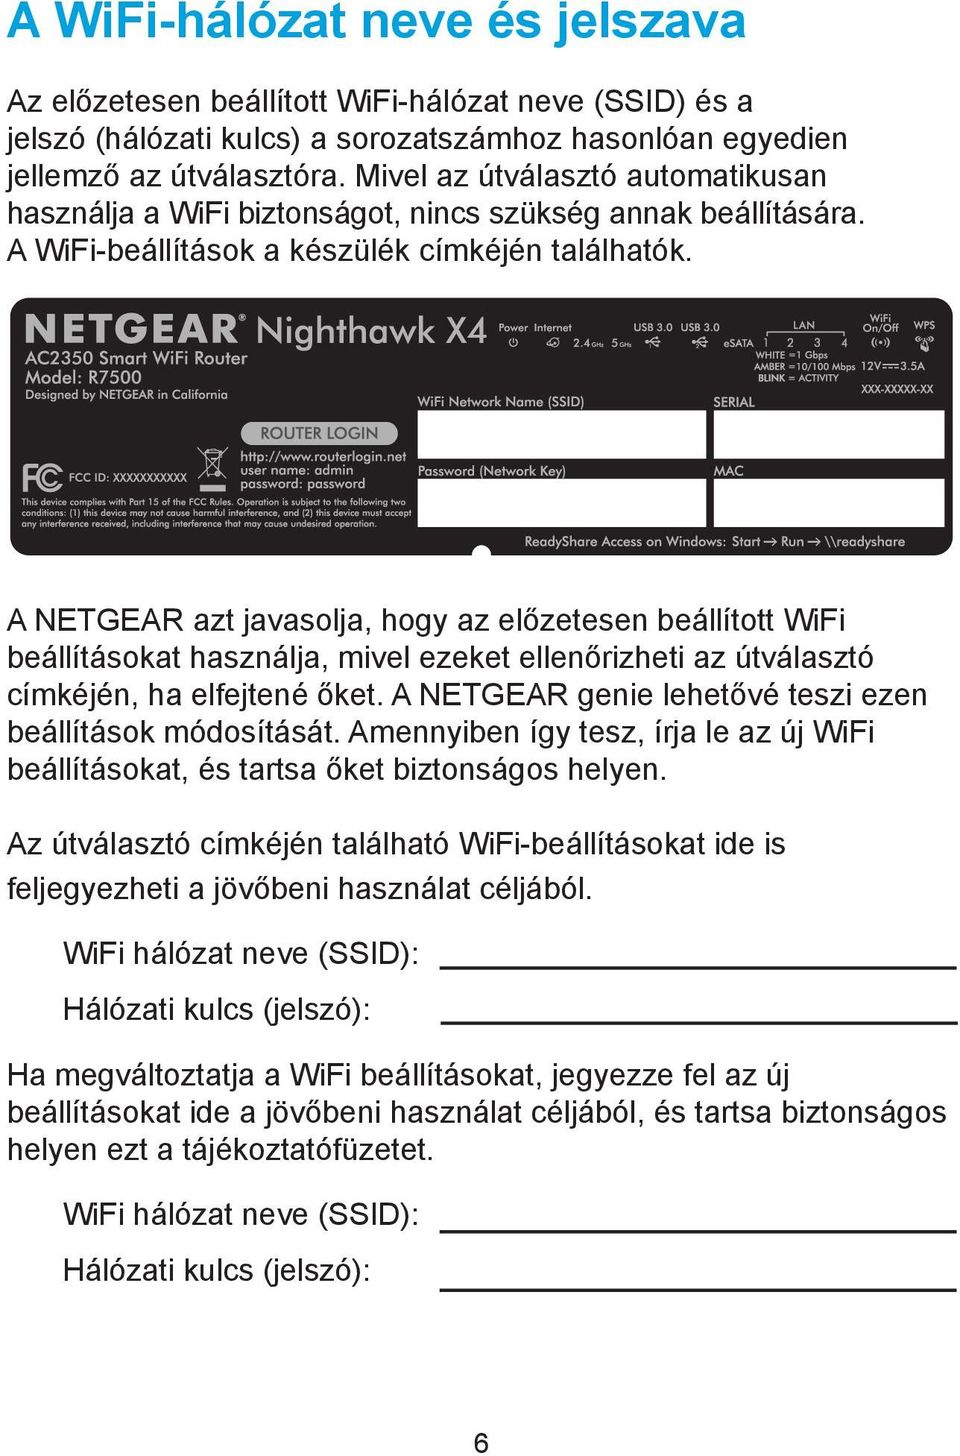 A NETGEAR azt javasolja, hogy az előzetesen beállított WiFi beállításokat használja, mivel ezeket ellenőrizheti az útválasztó címkéjén, ha elfejtené őket.